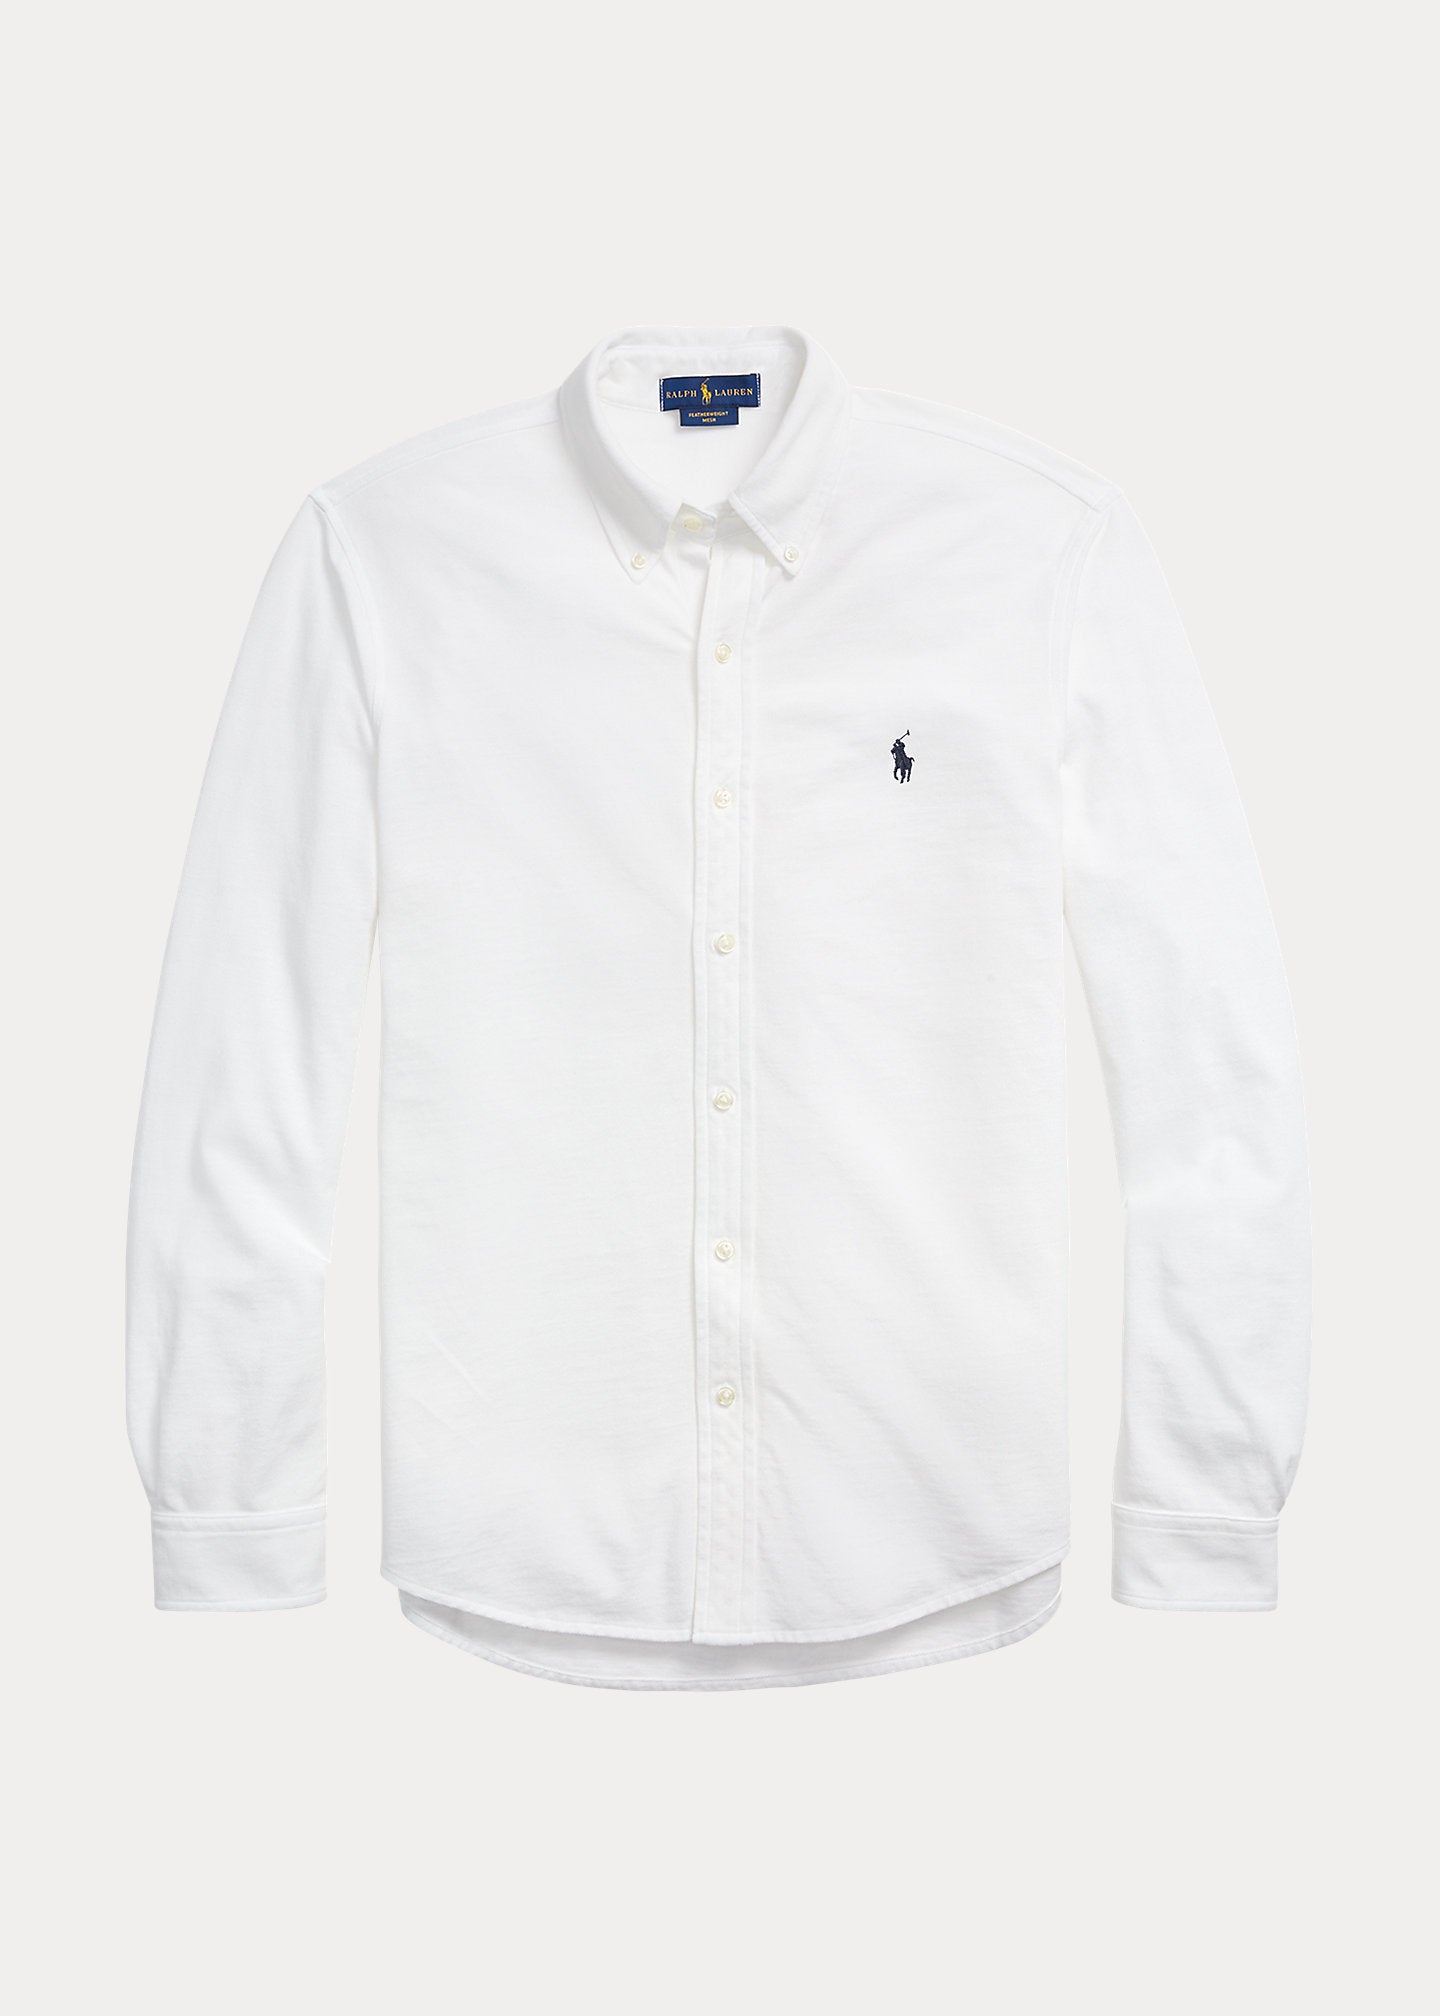 White Twill shirt